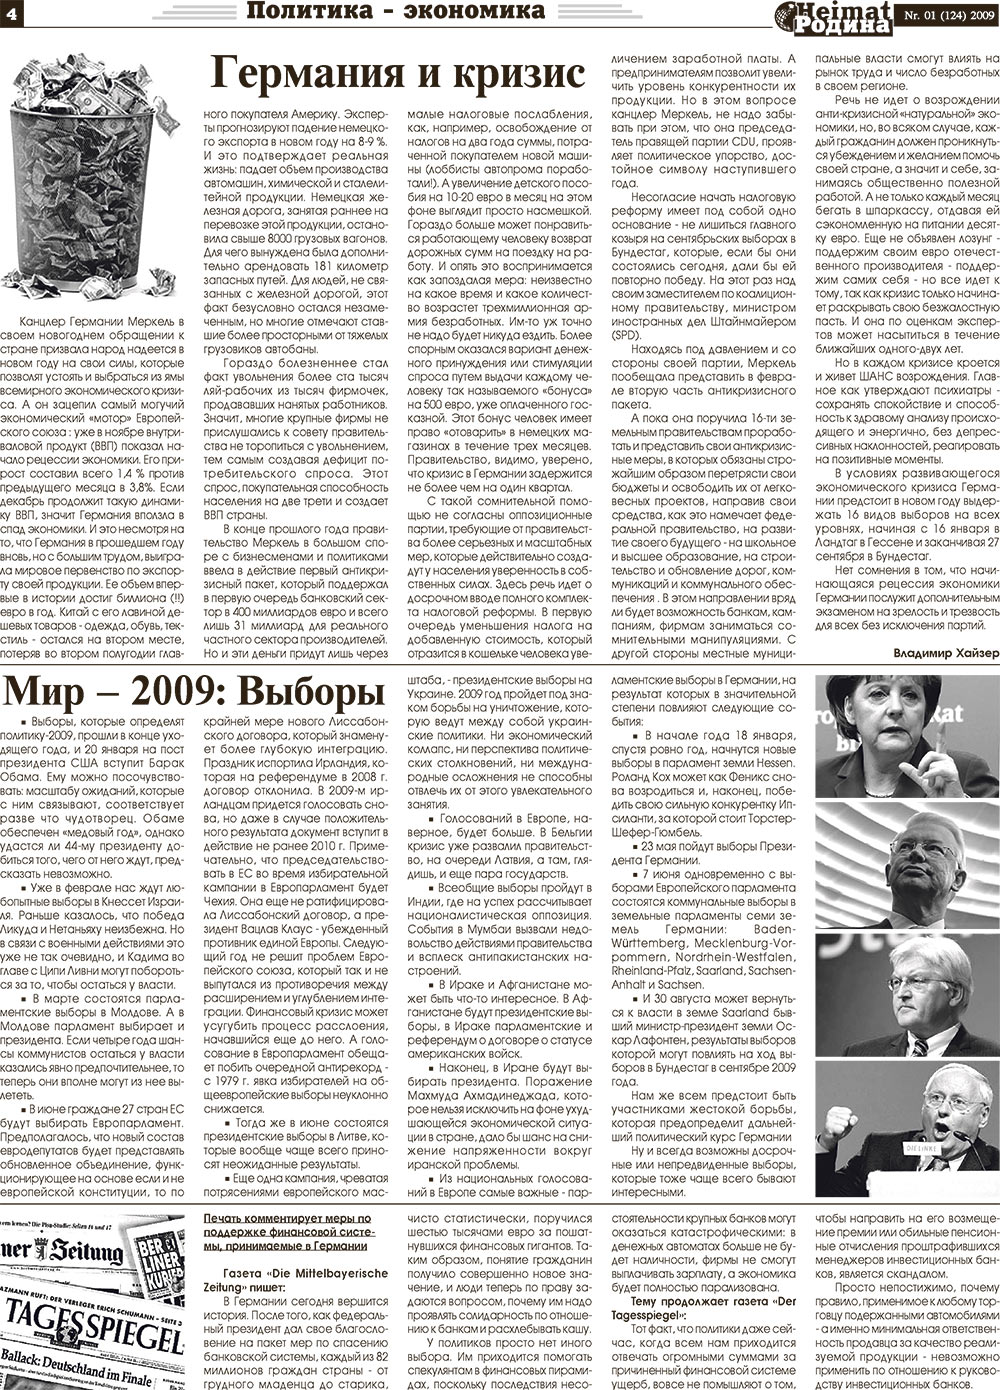 Heimat-Родина (газета). 2009 год, номер 1, стр. 4